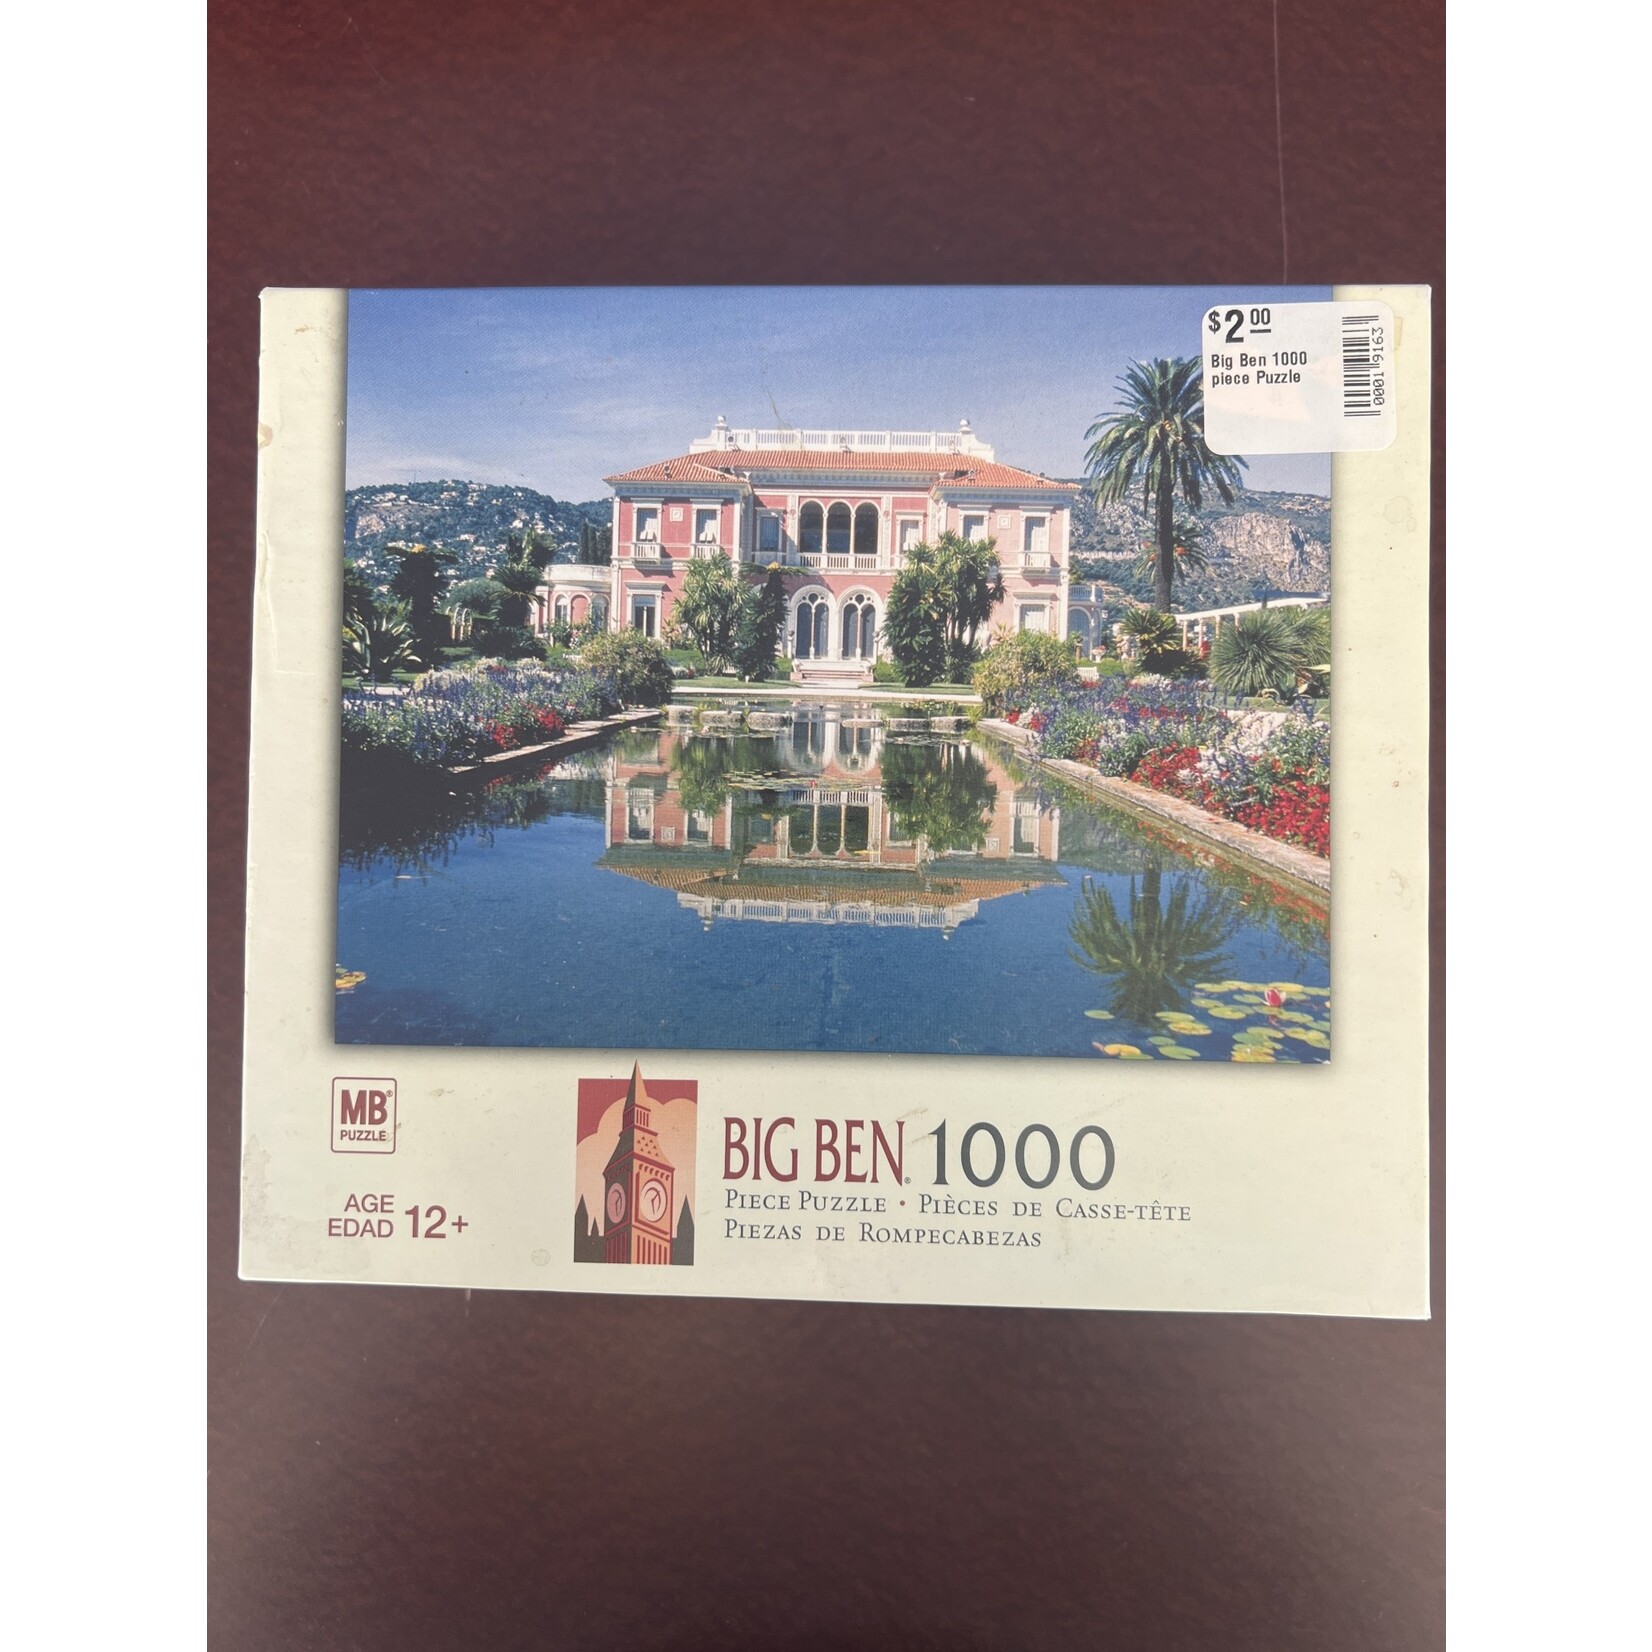 Big Ben 1000 piece Puzzle